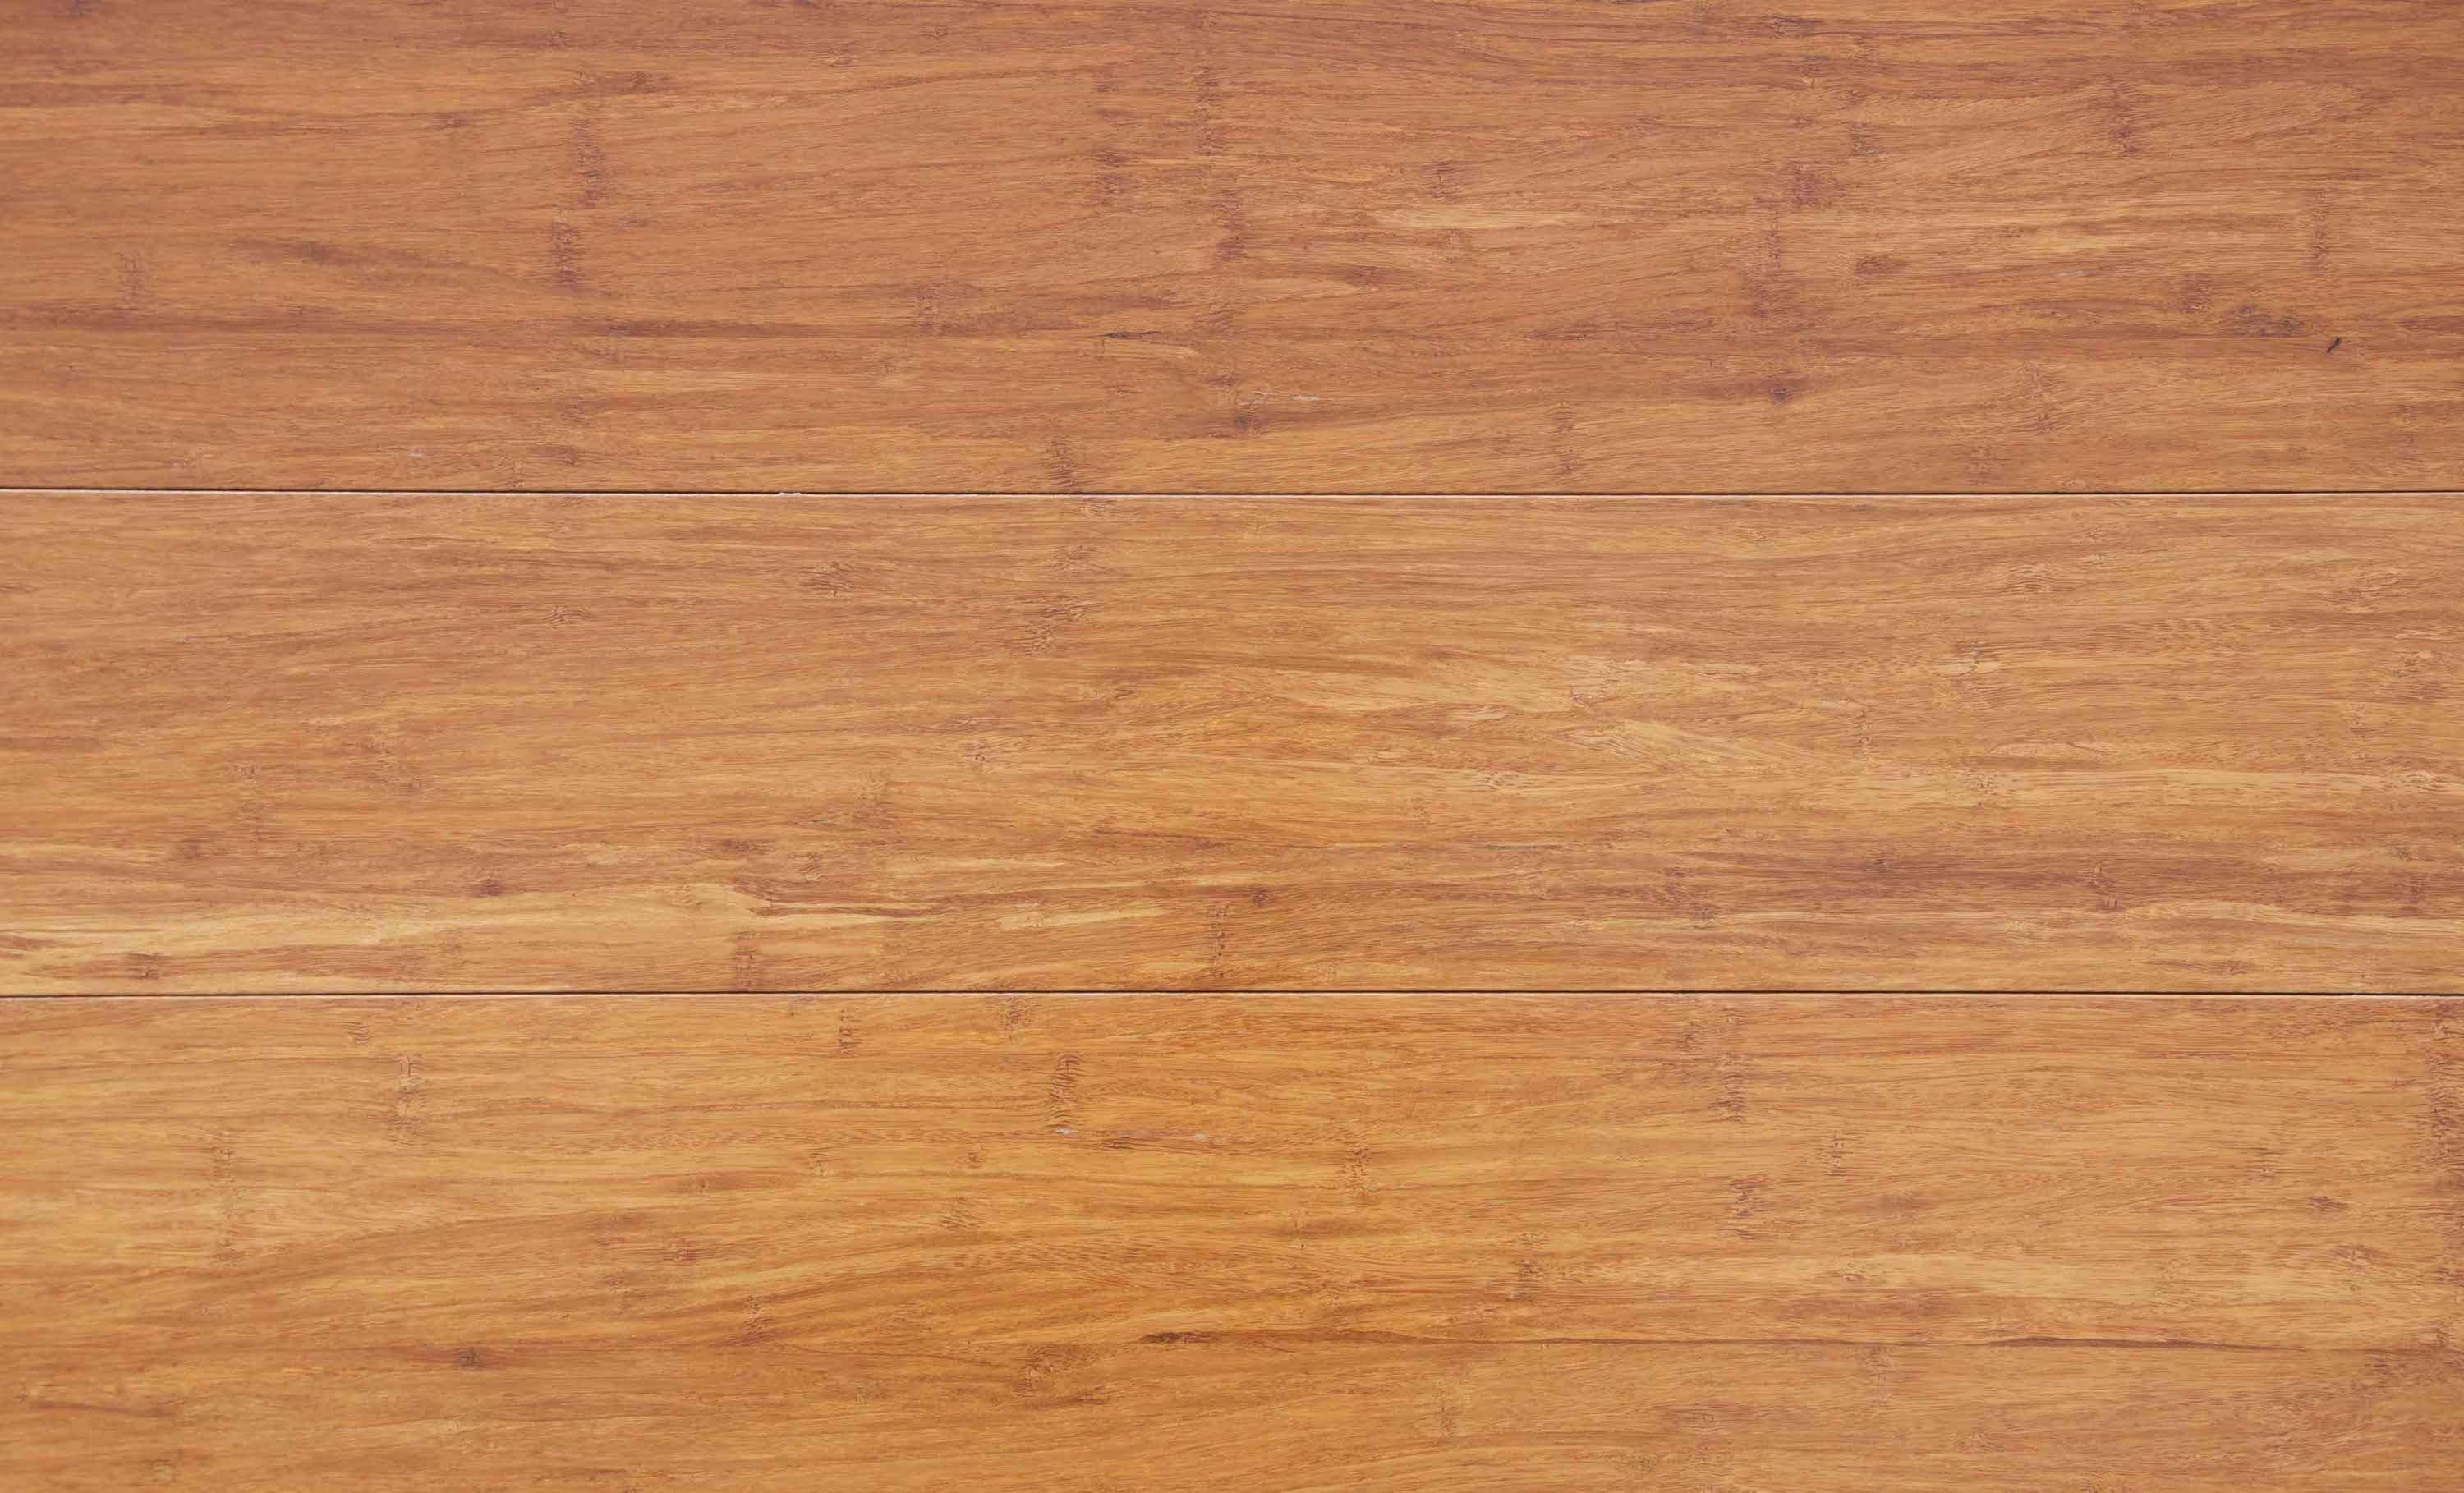 23 Best Hardwood Floor Cost Vs Laminate 2024 free download hardwood floor cost vs laminate of 37 best unfinished bamboo floor stock flooring design ideas regarding bamboo laminate flooring rhino style moyen wood effect vinyl floor